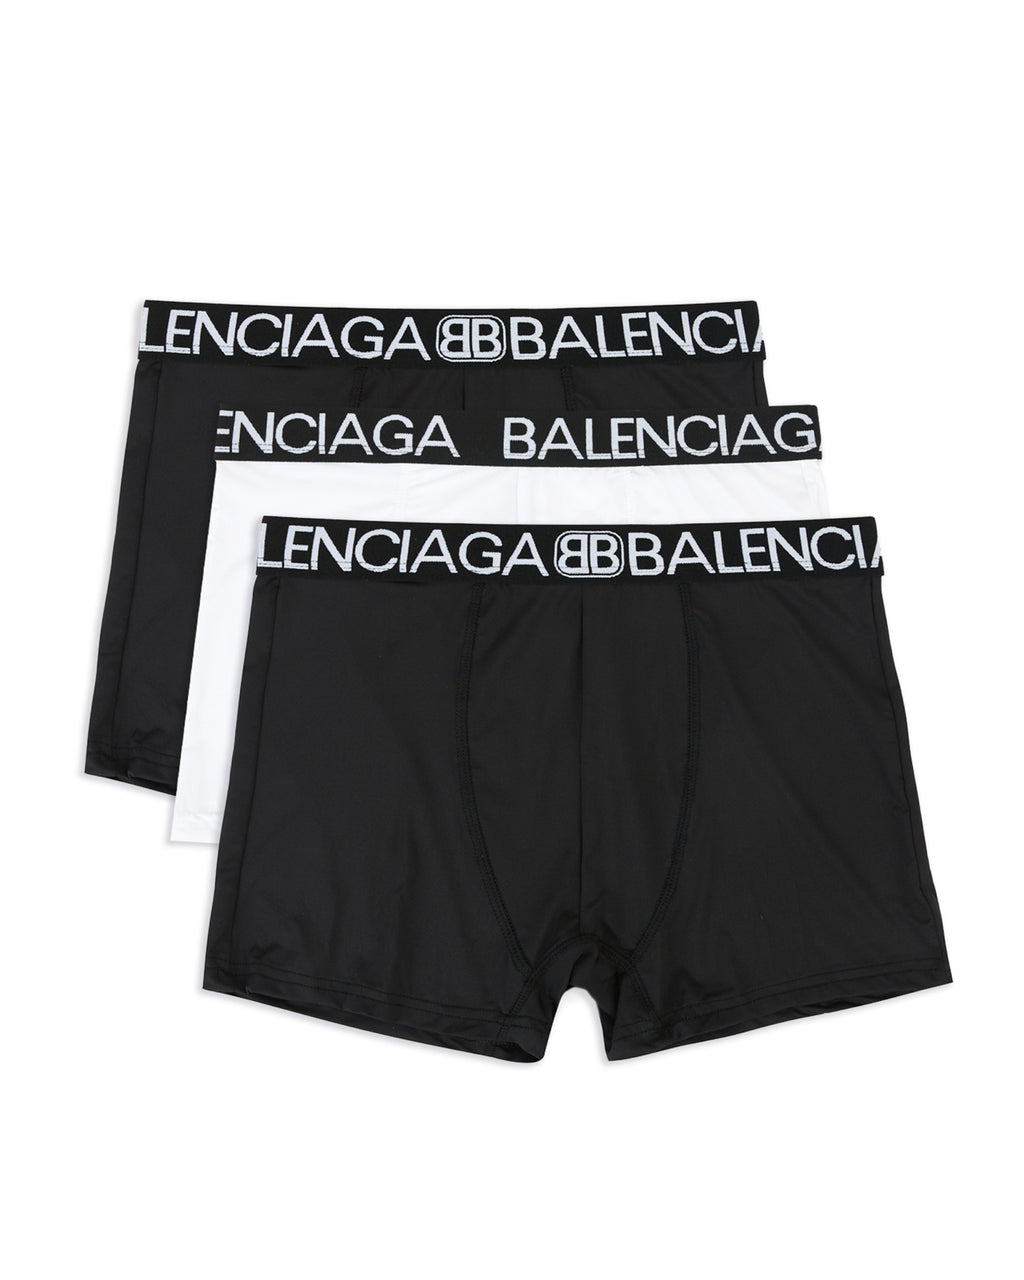 Balenciaga Boxers for Men